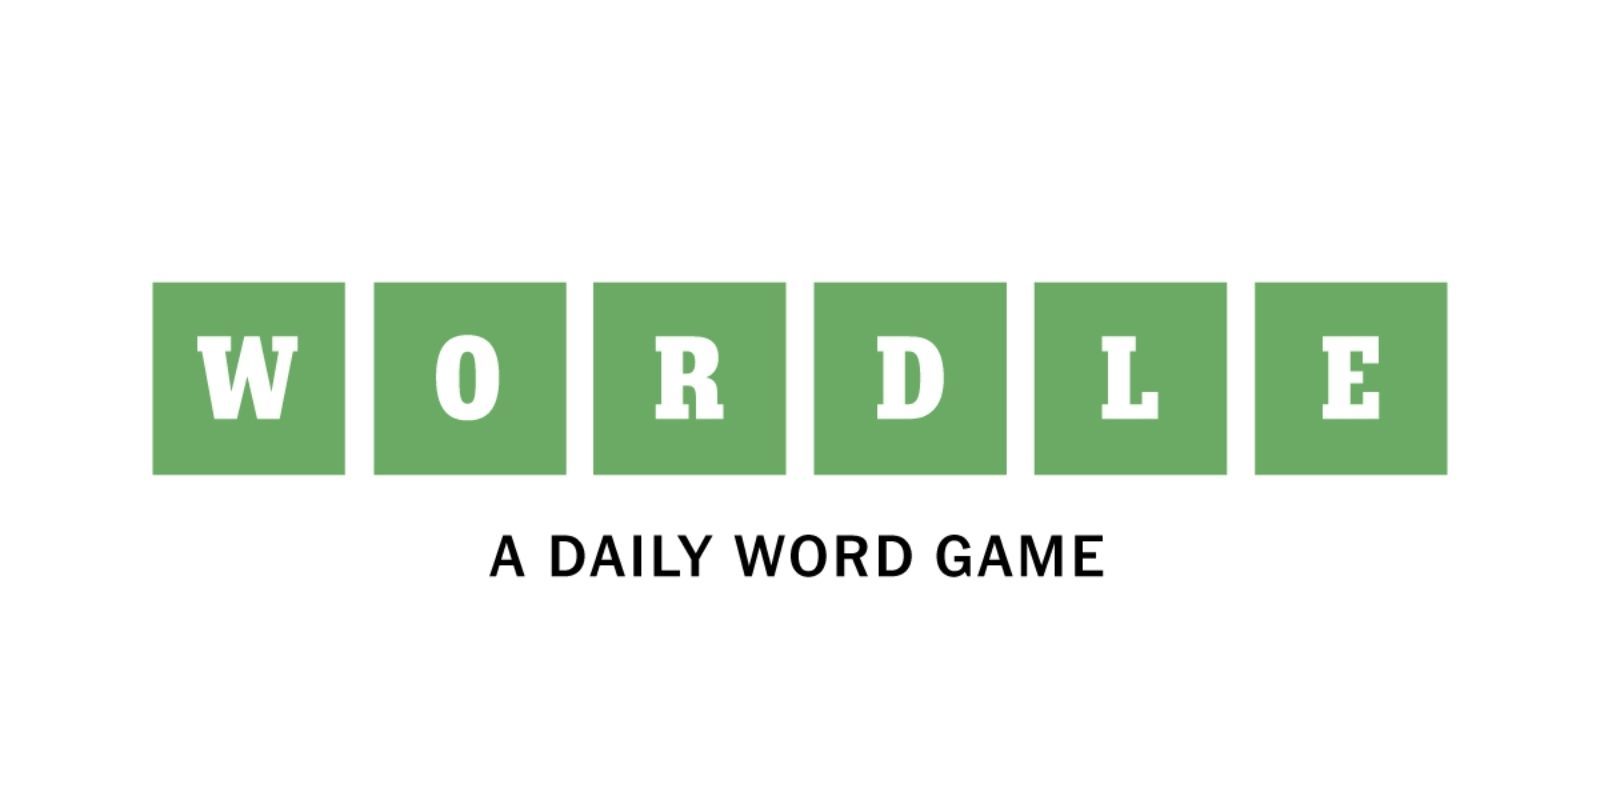 La psicología de Wordle: por qué saber que es “difícil” lo hace más fácil